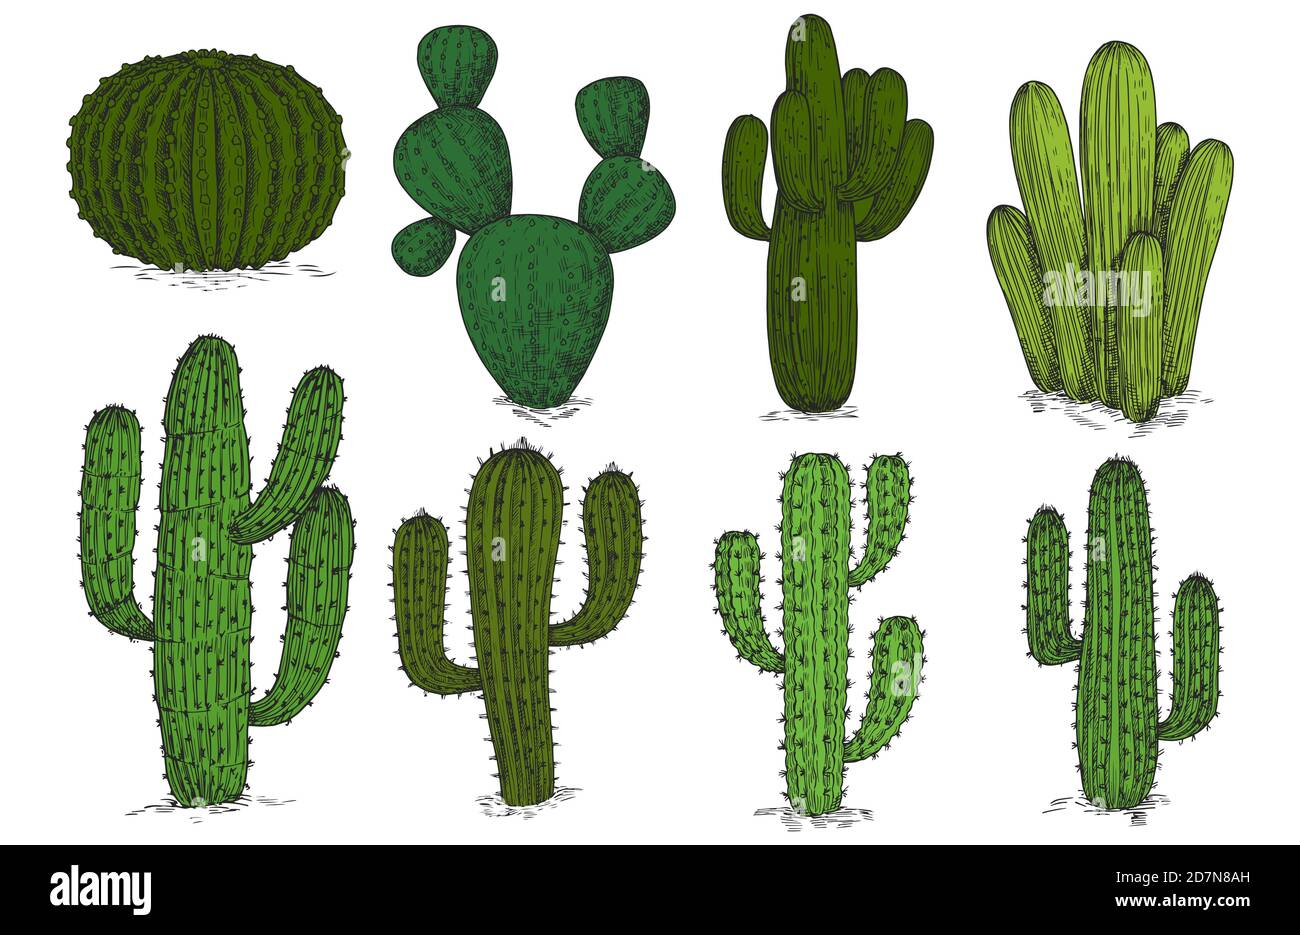 Handgezeichnete Gravur Kaktus Vektor-Set isoliert auf weißem Hintergrund. Skizze Kaktus Pflanze, Kakteen mexikanische Blumendarstellung Stock Vektor